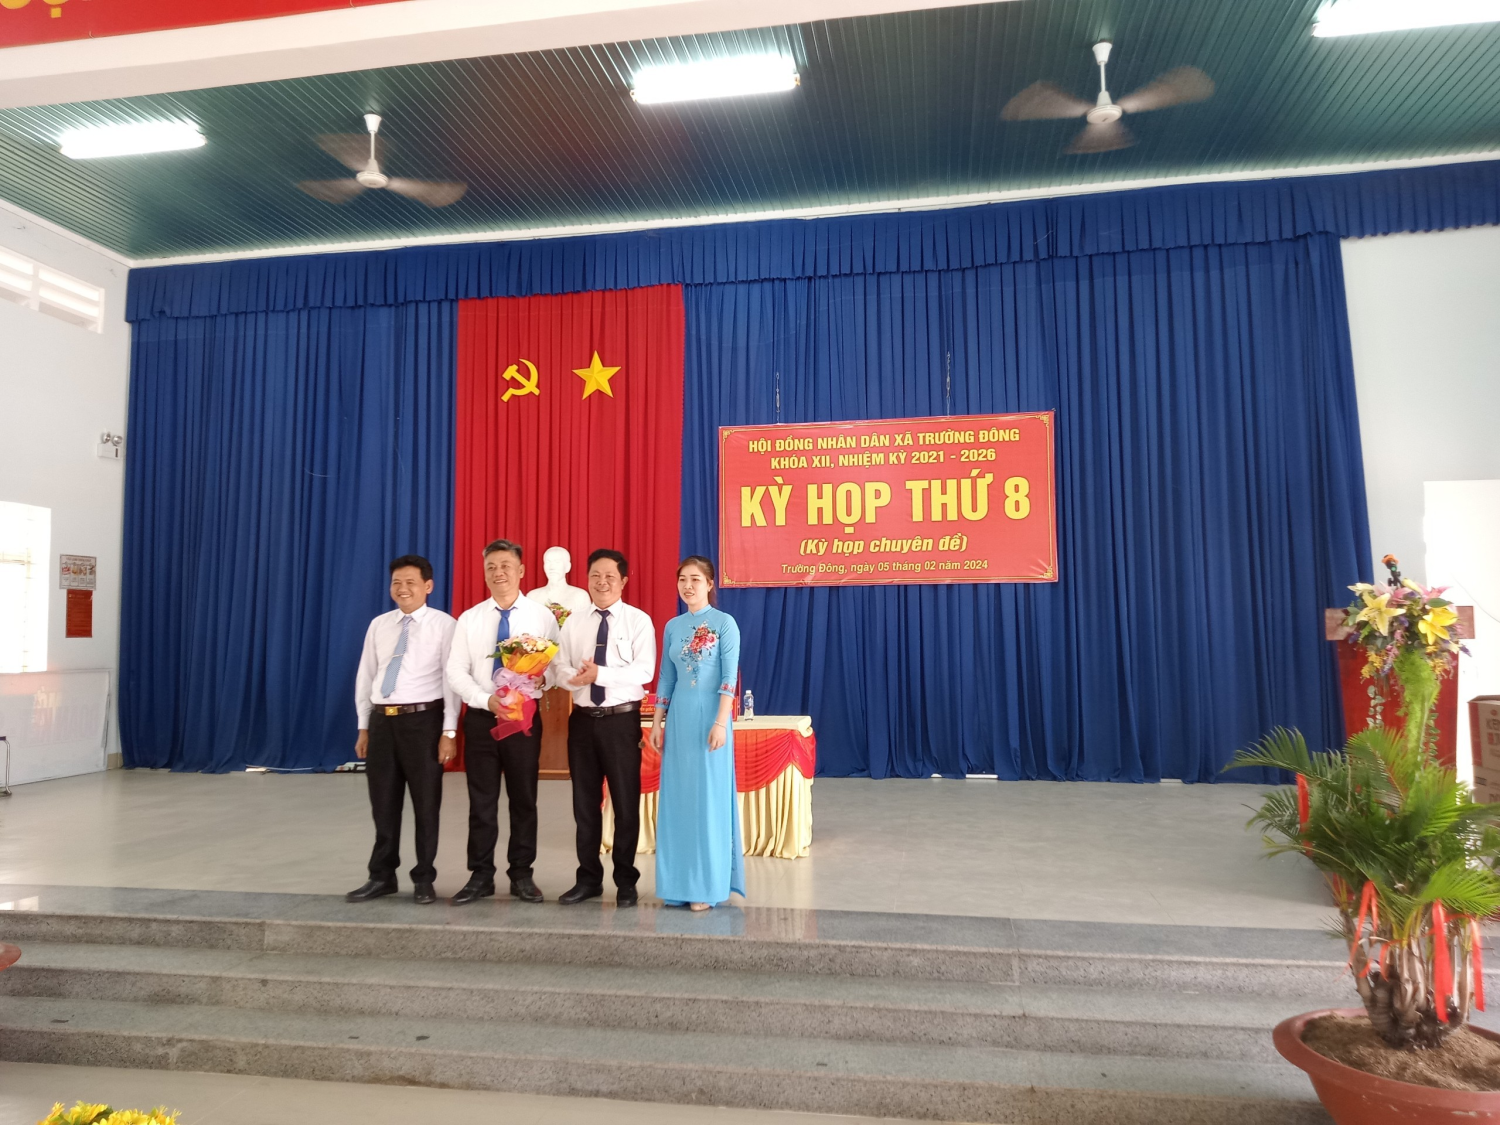 HĐND xã Trường Đông tổ chức kỳ họp thứ 8 (Kỳ họp chuyên đề) bầu chức danh PCT.UBND xã